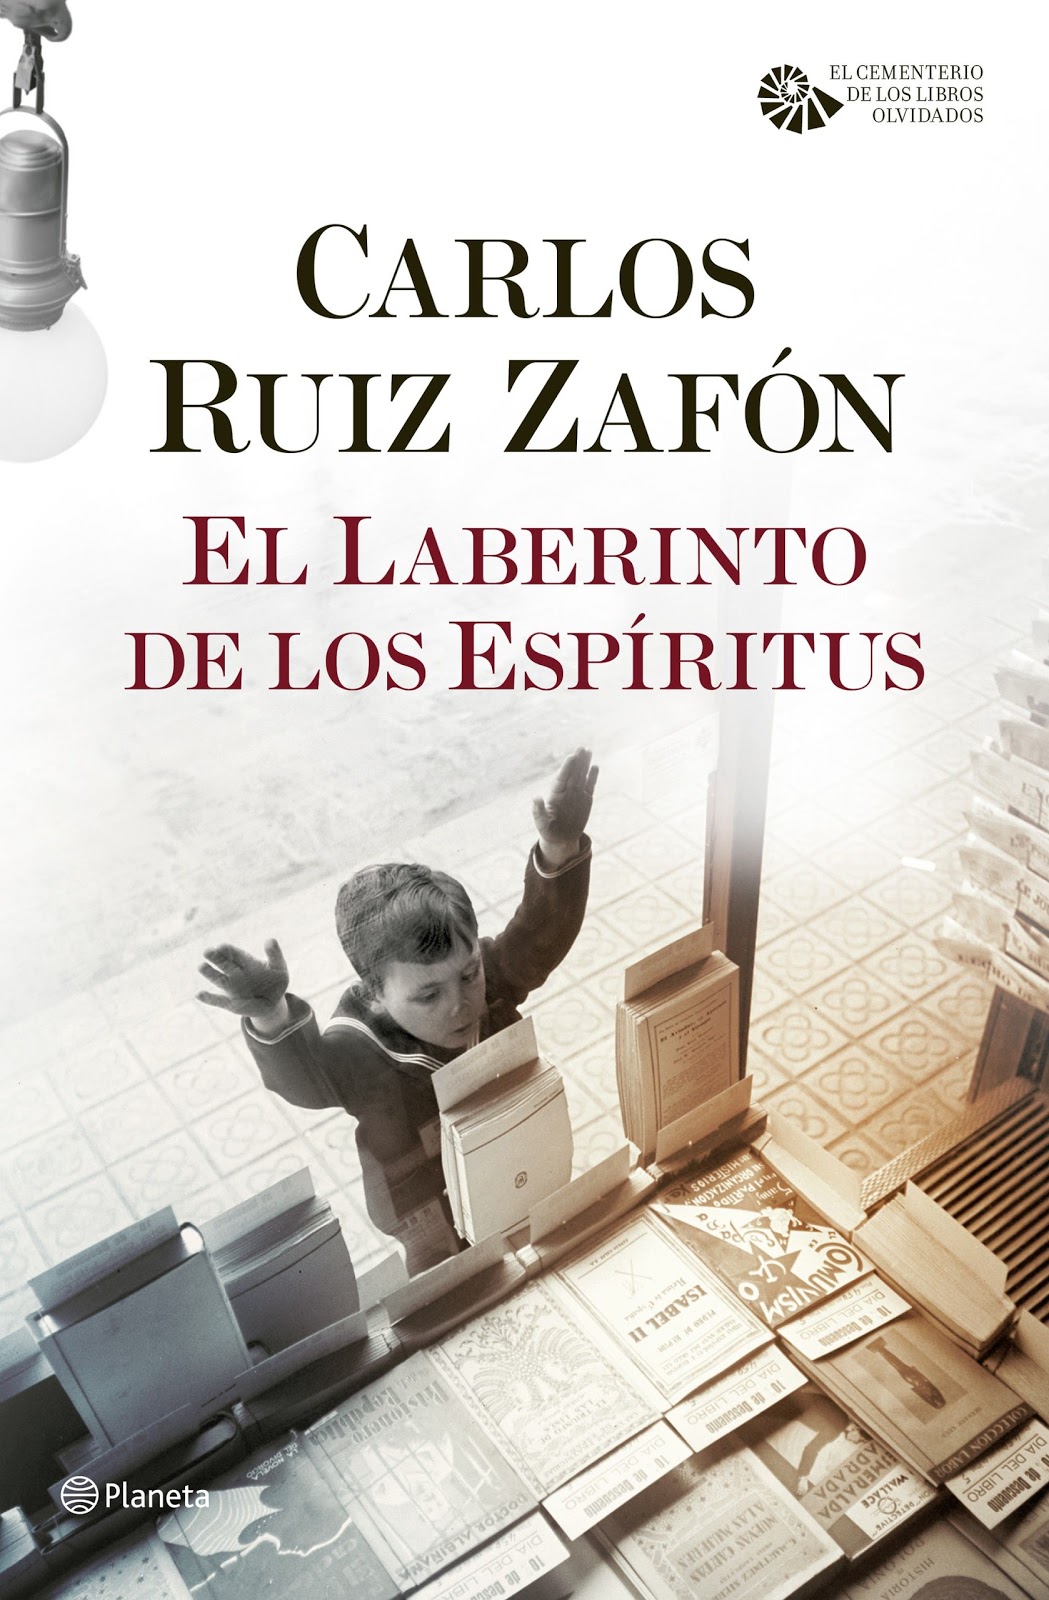 La Esfera Cultural: Vuelve Carlos Ruiz Zafón con portada ganadora